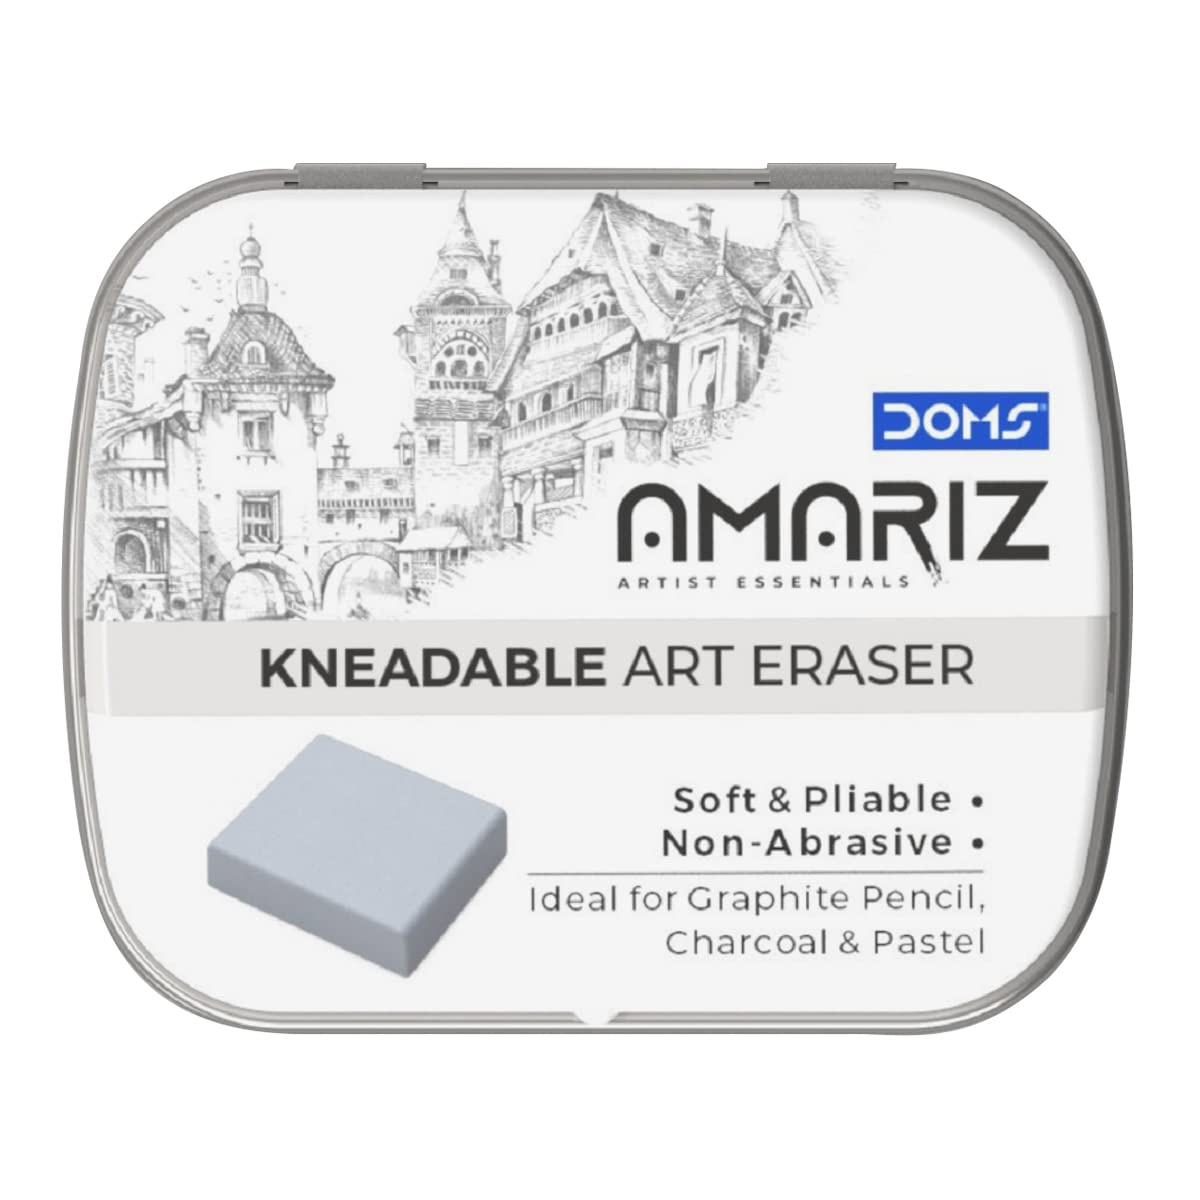 Doms Amriz Kneadable Art Eraser Grey Colour